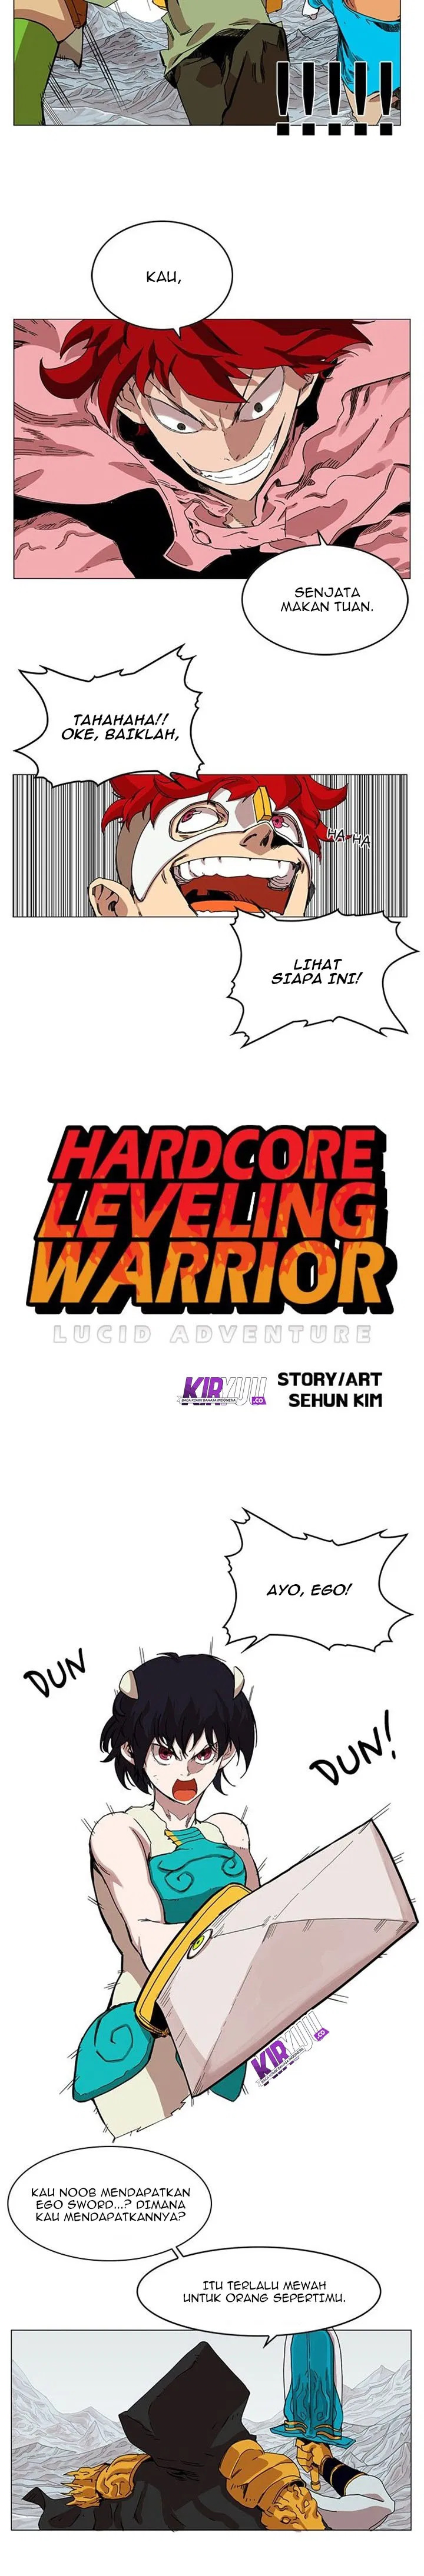 Hardcore Leveling Warrior Chapter 46